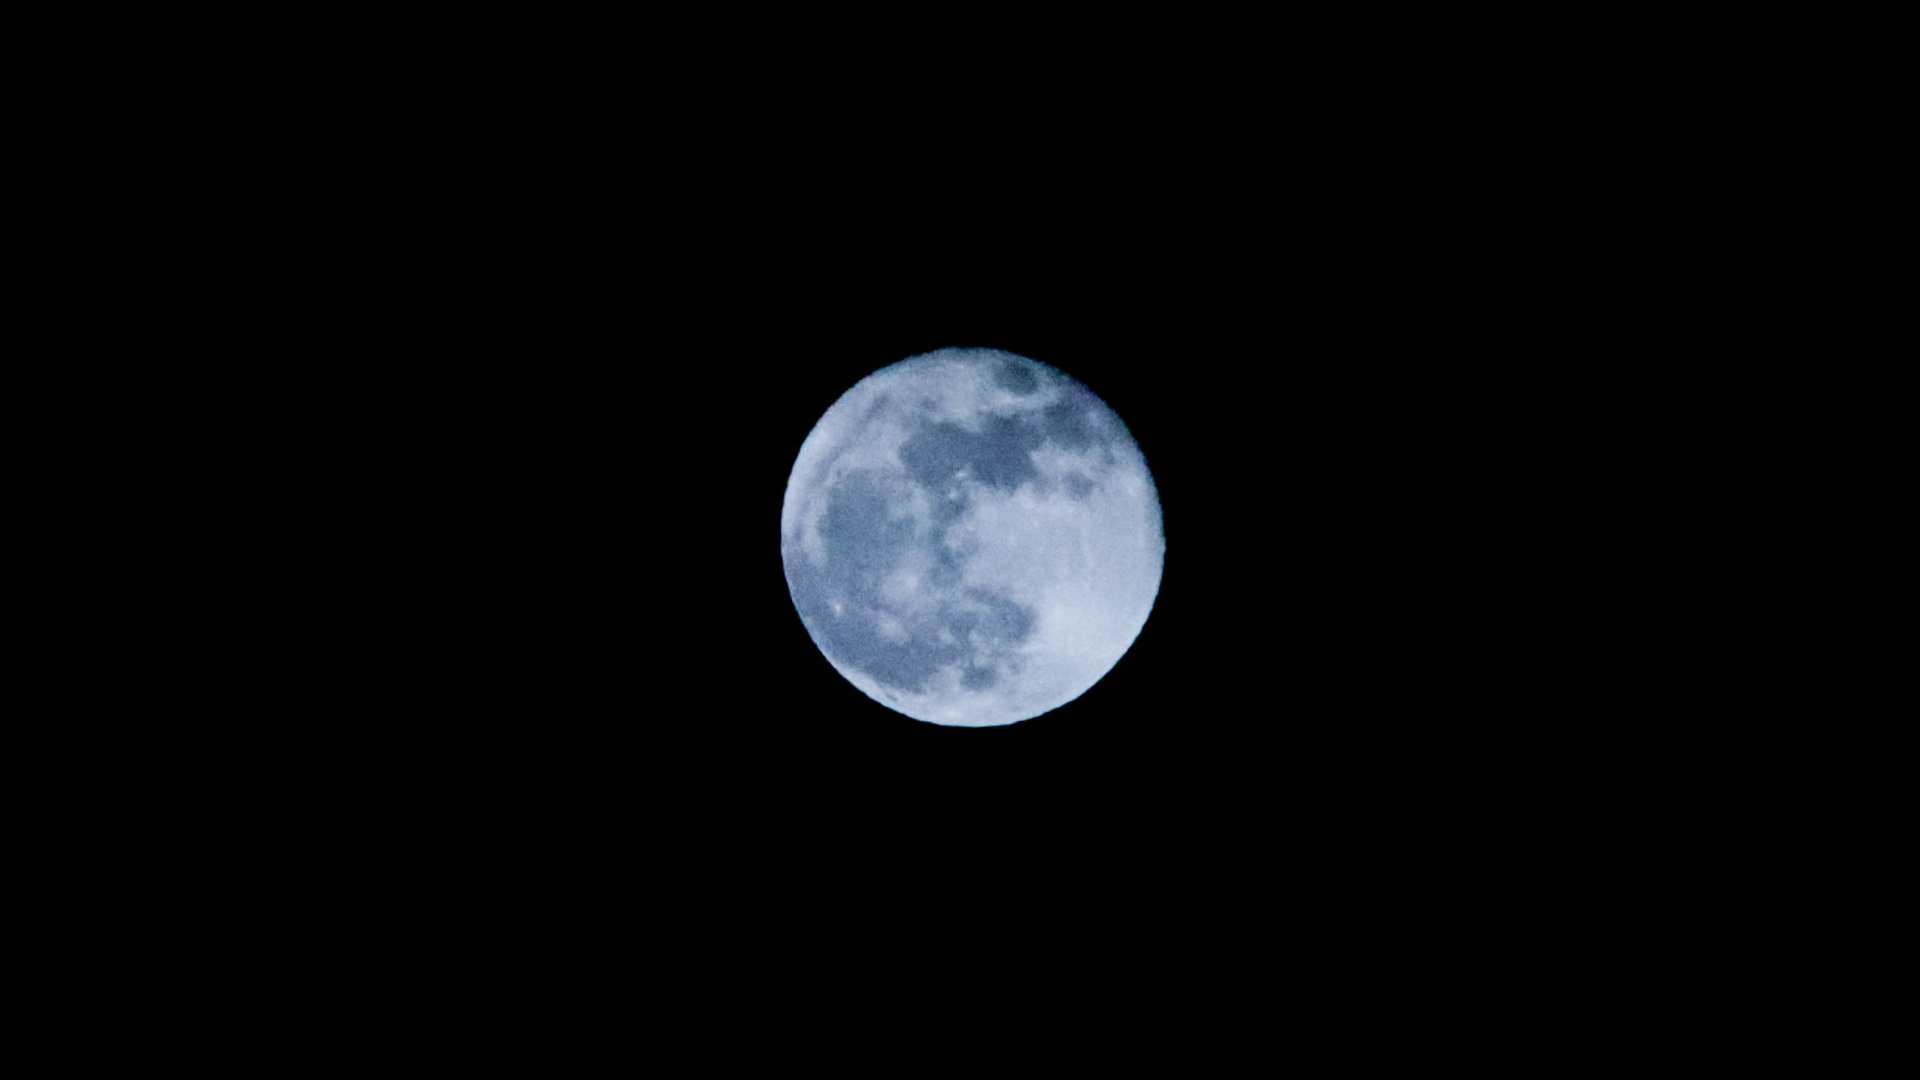 Обои В Moonlight Meadery Курц Яблочный Пирог, луна, астрономический объект, свет, лунный свет в разрешении 1920x1080